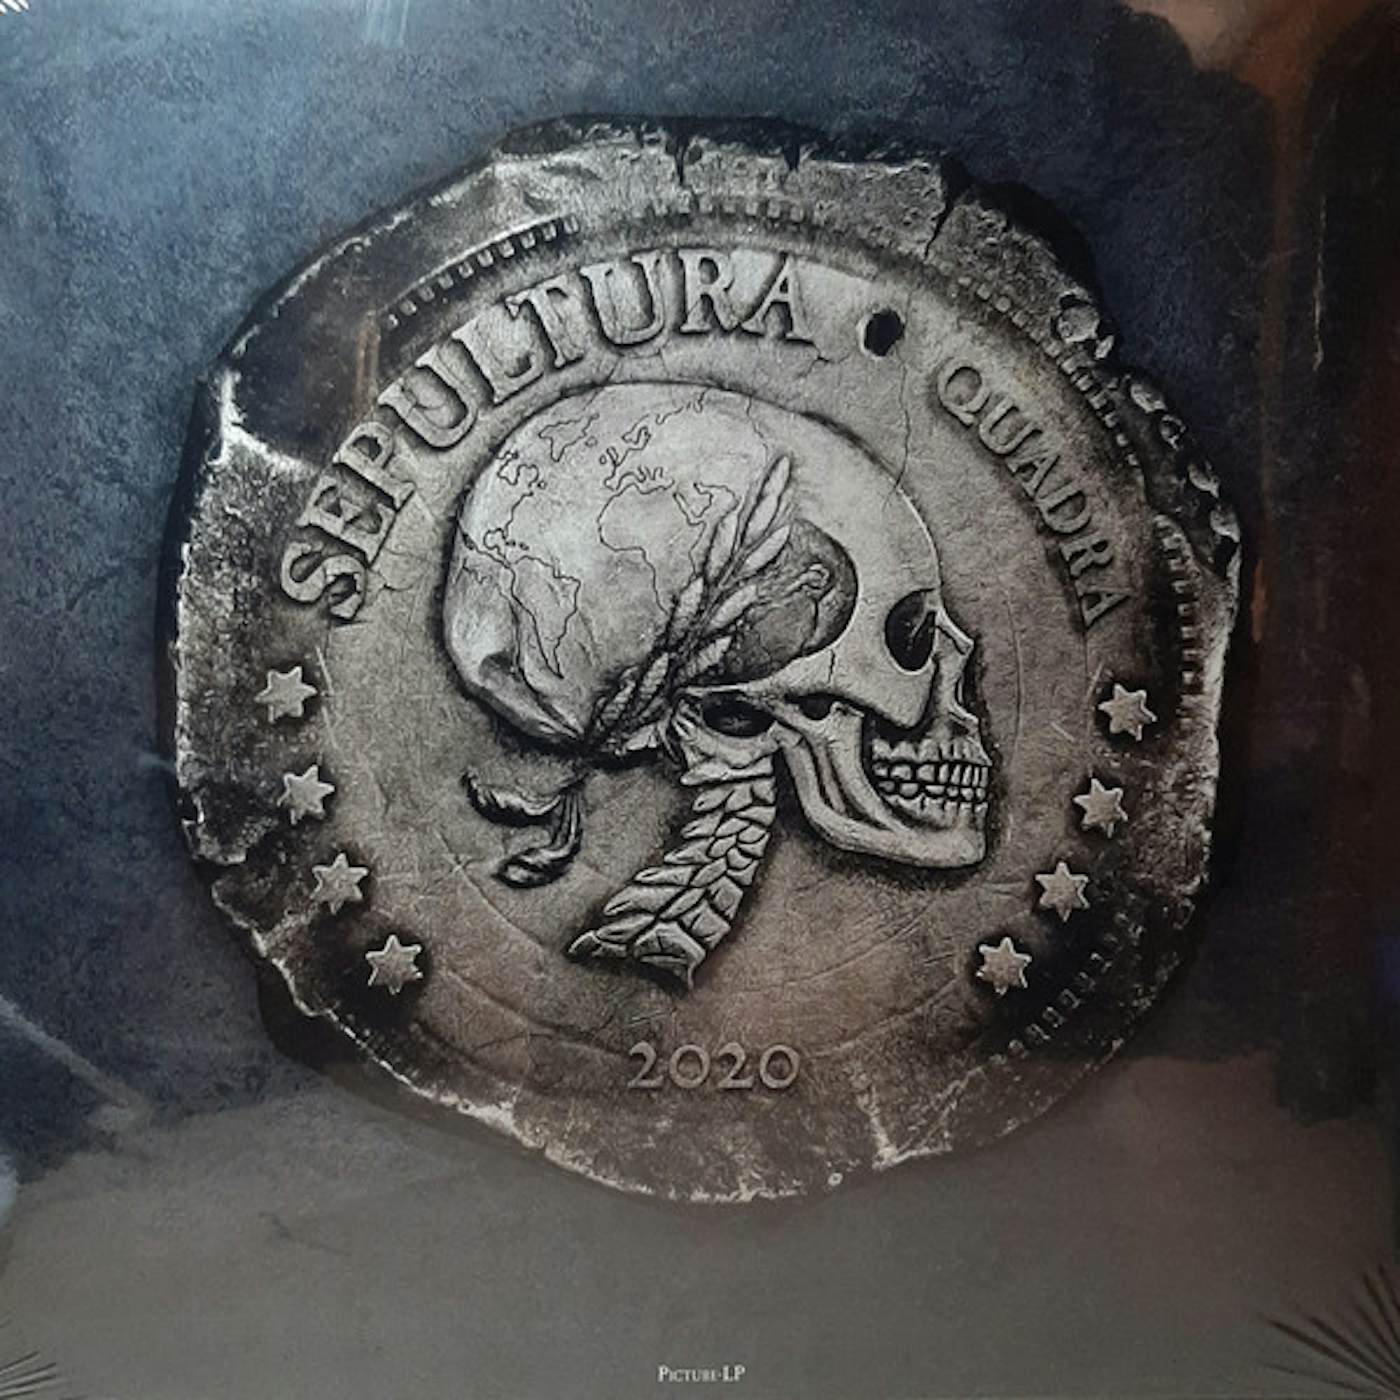 Sepultura Quadra Vinyl Record